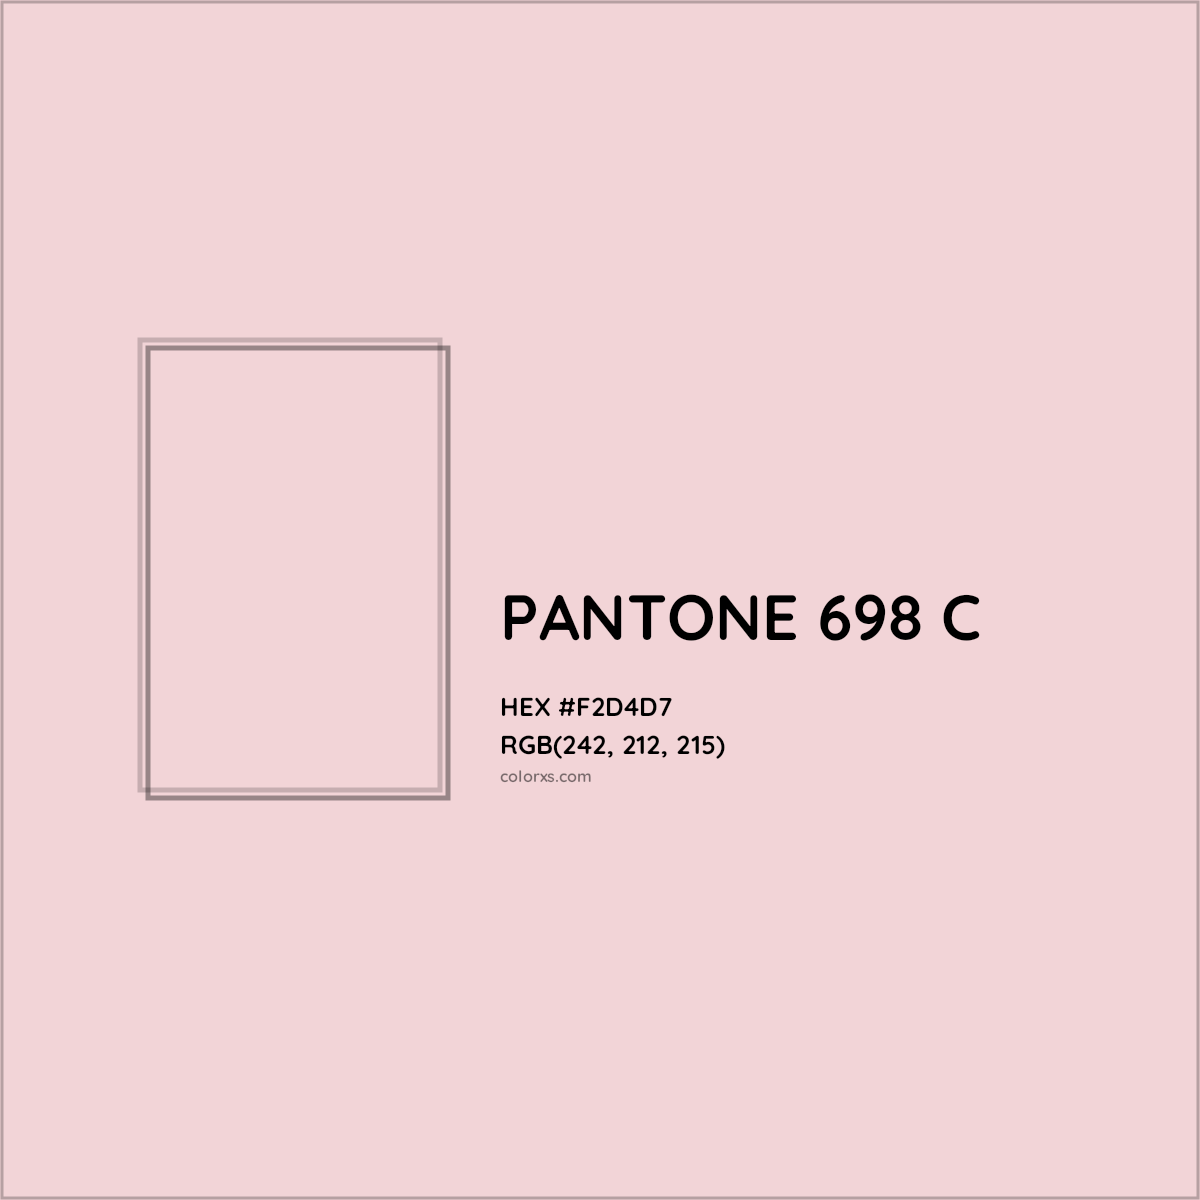 HEX #F2D4D7 PANTONE 698 C CMS Pantone PMS - Color Code